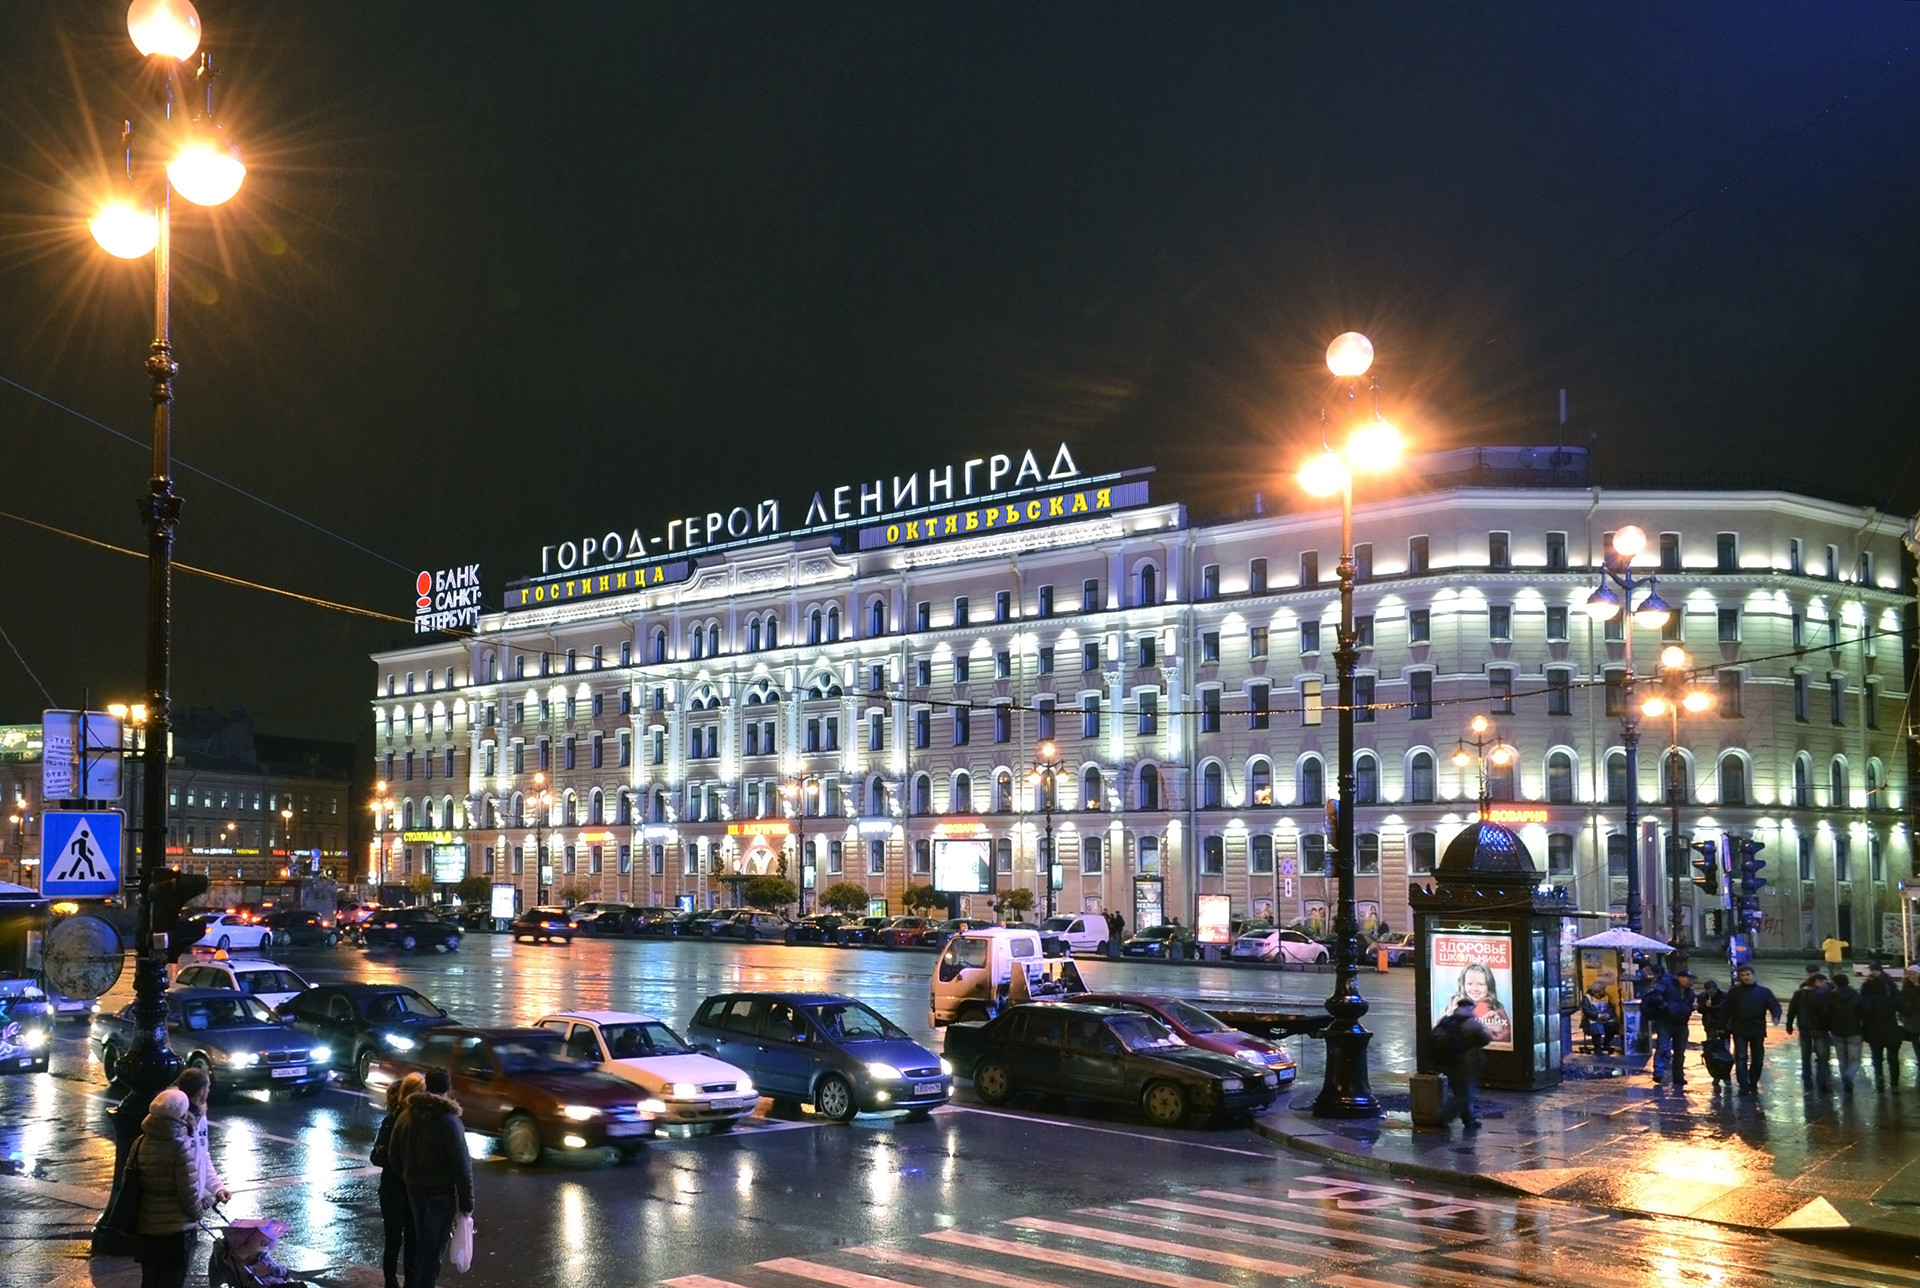 Hotel Oktiábrskaia en San Petersburgo. El letrero dice 